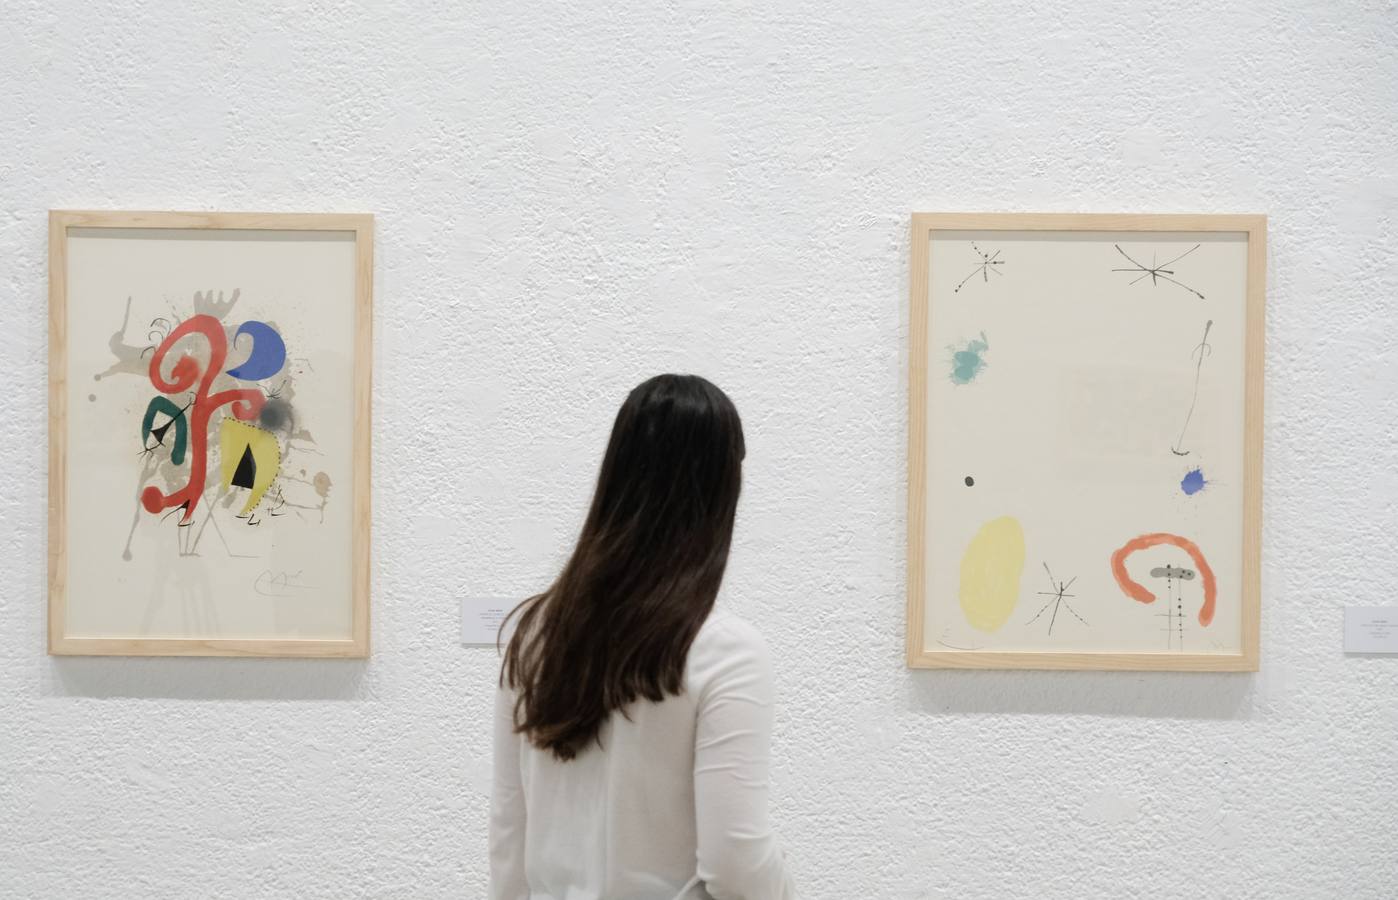 'Miró. El jardín de las maravillas', que podrá visitarse hasta el 7 de enero, muestra más de medio centenar de obras pertenecientes a la colección Guido Guastalla